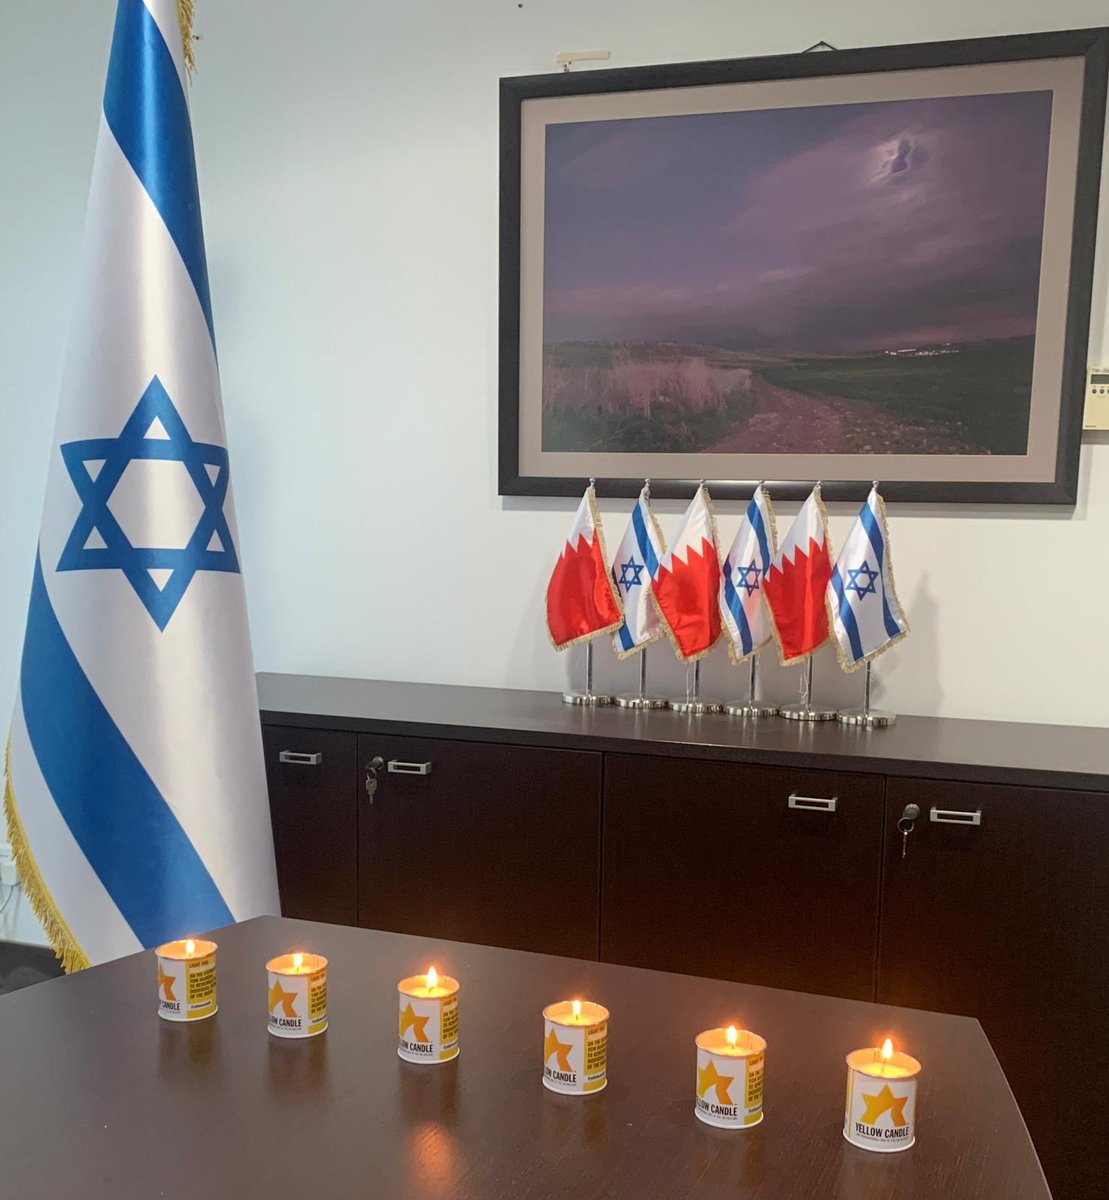 تخليد ذكرى ضحايا المحرقة النازية في سفارة اسرائيل في البحرين 
لن_ننسى
@AmbassadorNaeh